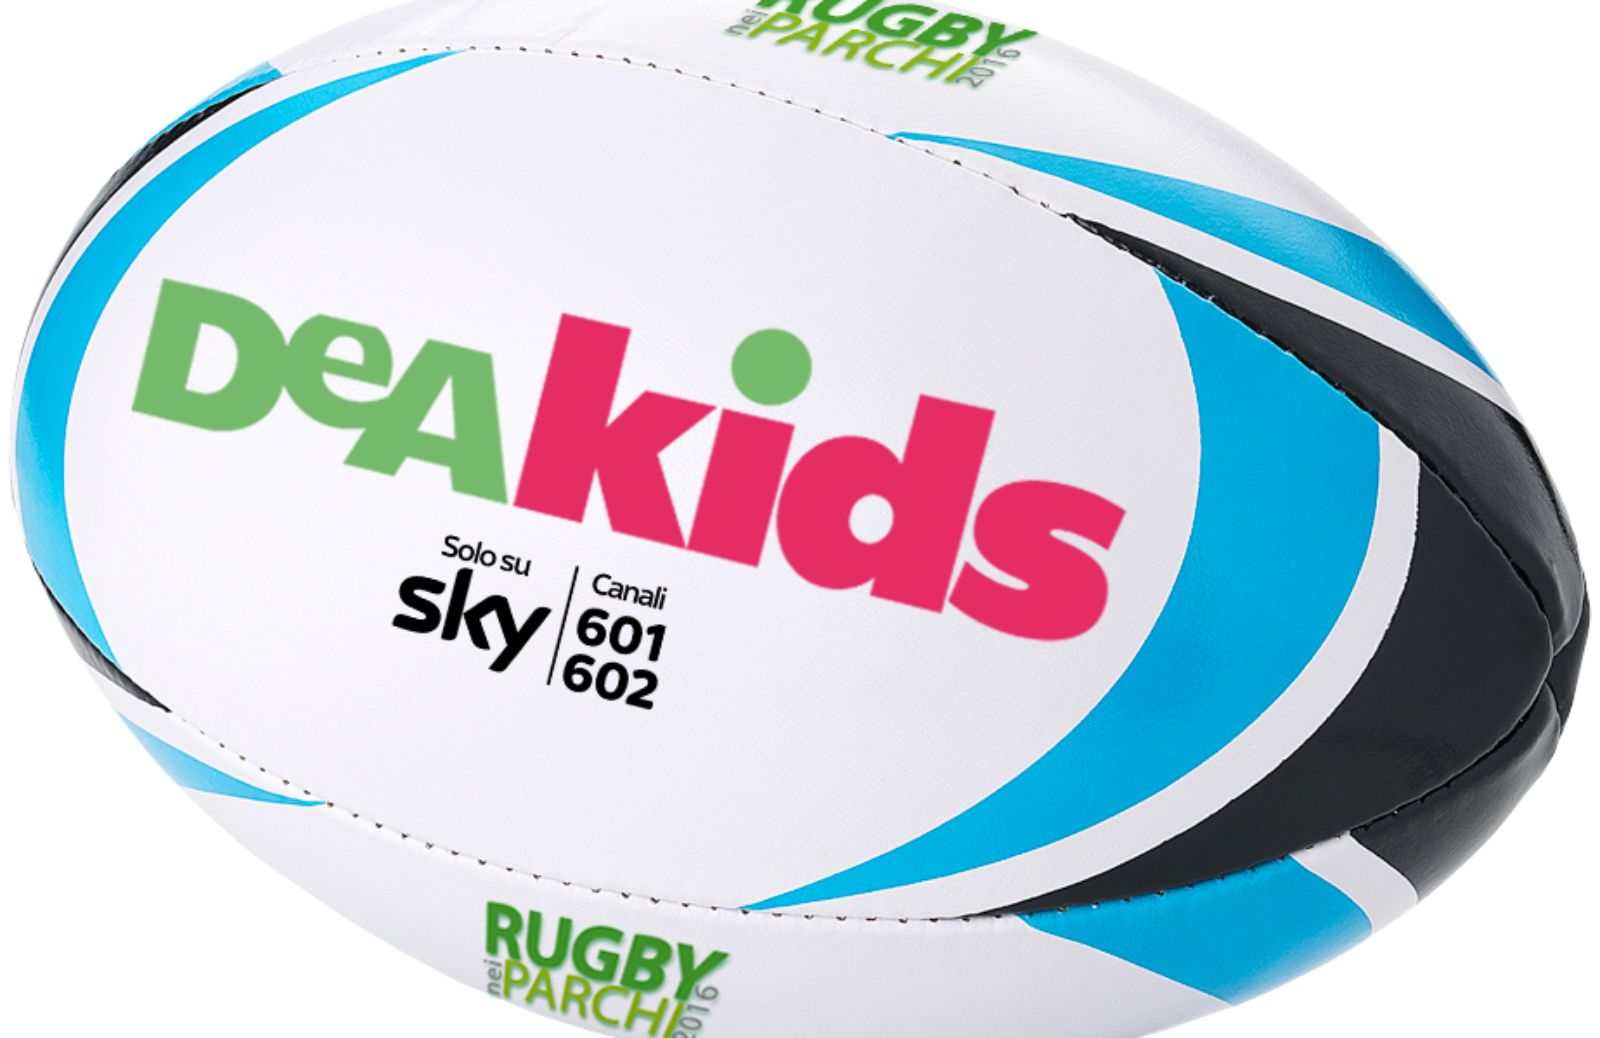 Rugby nei parchi: DeAKids ti invita all'evento dedicato ai bambini